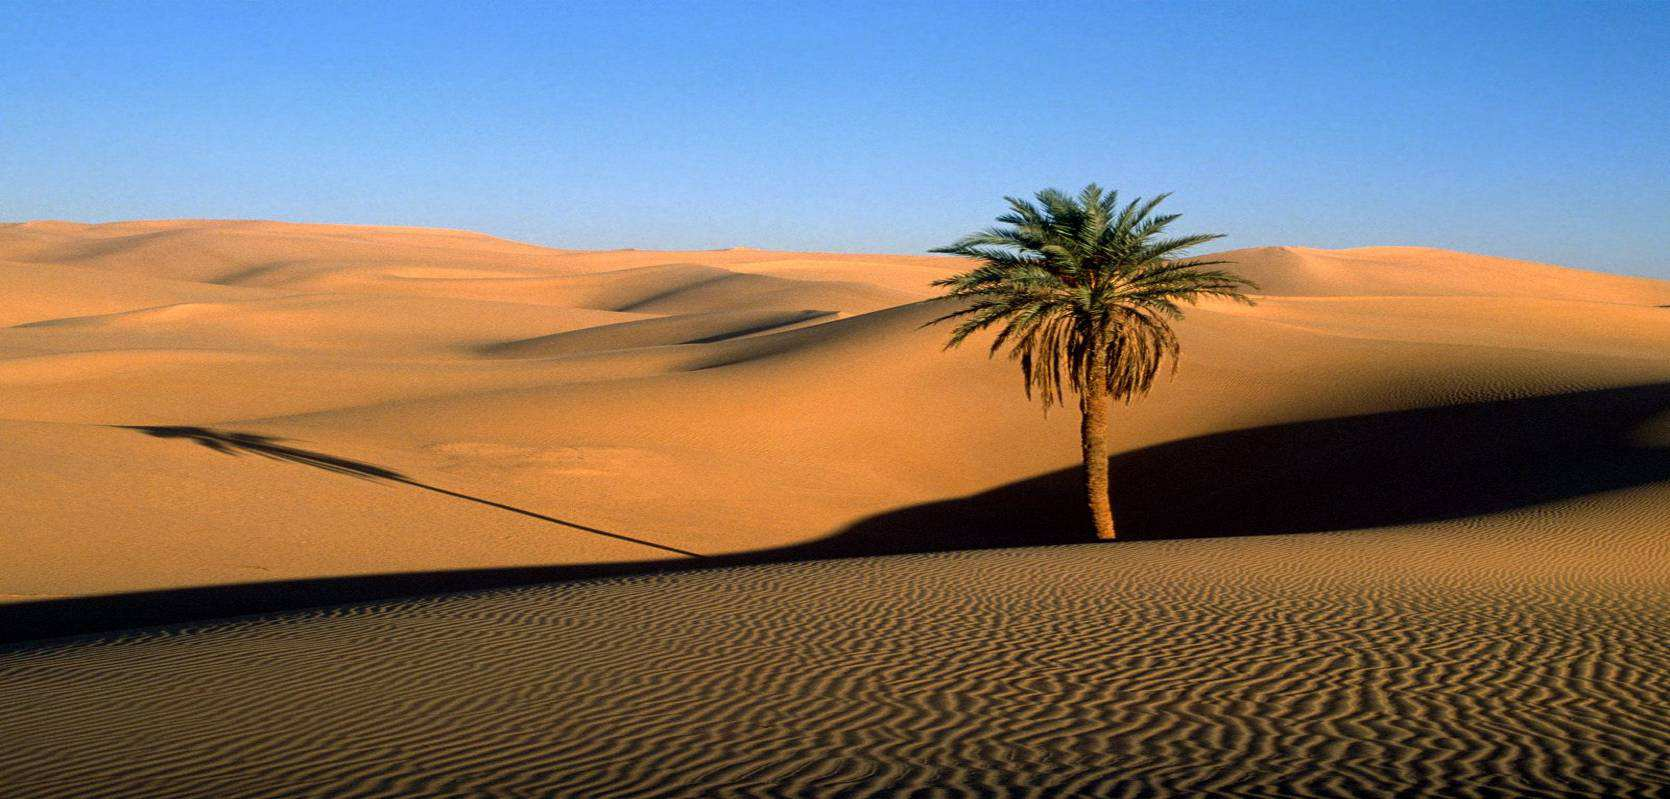 Περιπλάνηση και Εξερεύνηση Από τη δυτικόµορφη µεγαλούπολη του Μαρόκου, την Καζαµπλάνκα, ξεκινάει ένα οδοιπορικό εξερεύνησης της βορειοαφρικανικής αυτής χώρας στα δυτικά της Σαχάρας, που την βρέχουν η